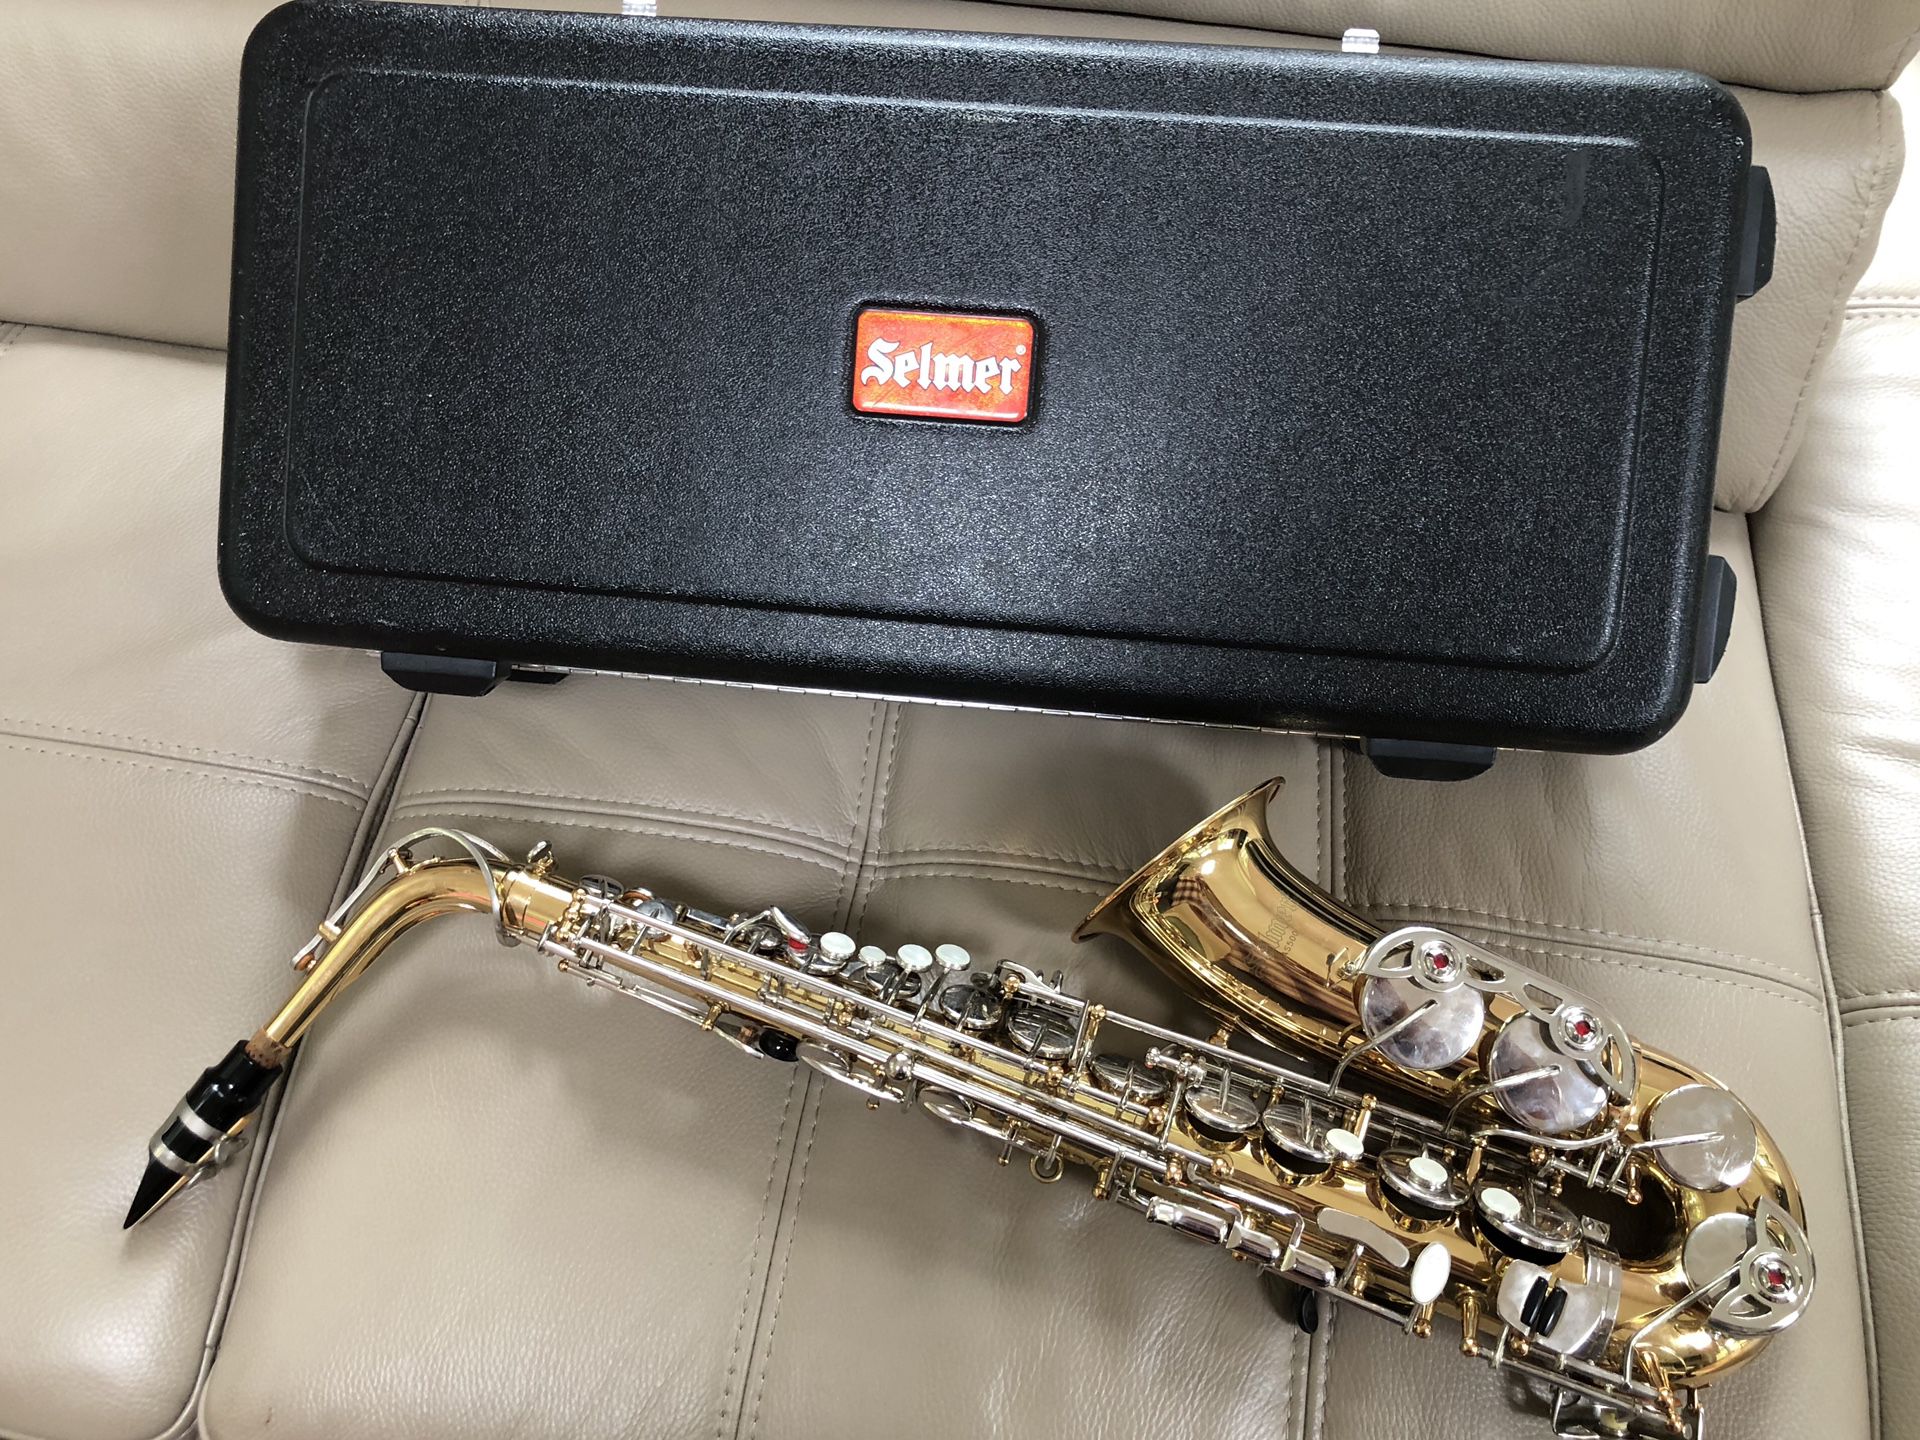 Selmer AS500 alto saxophone